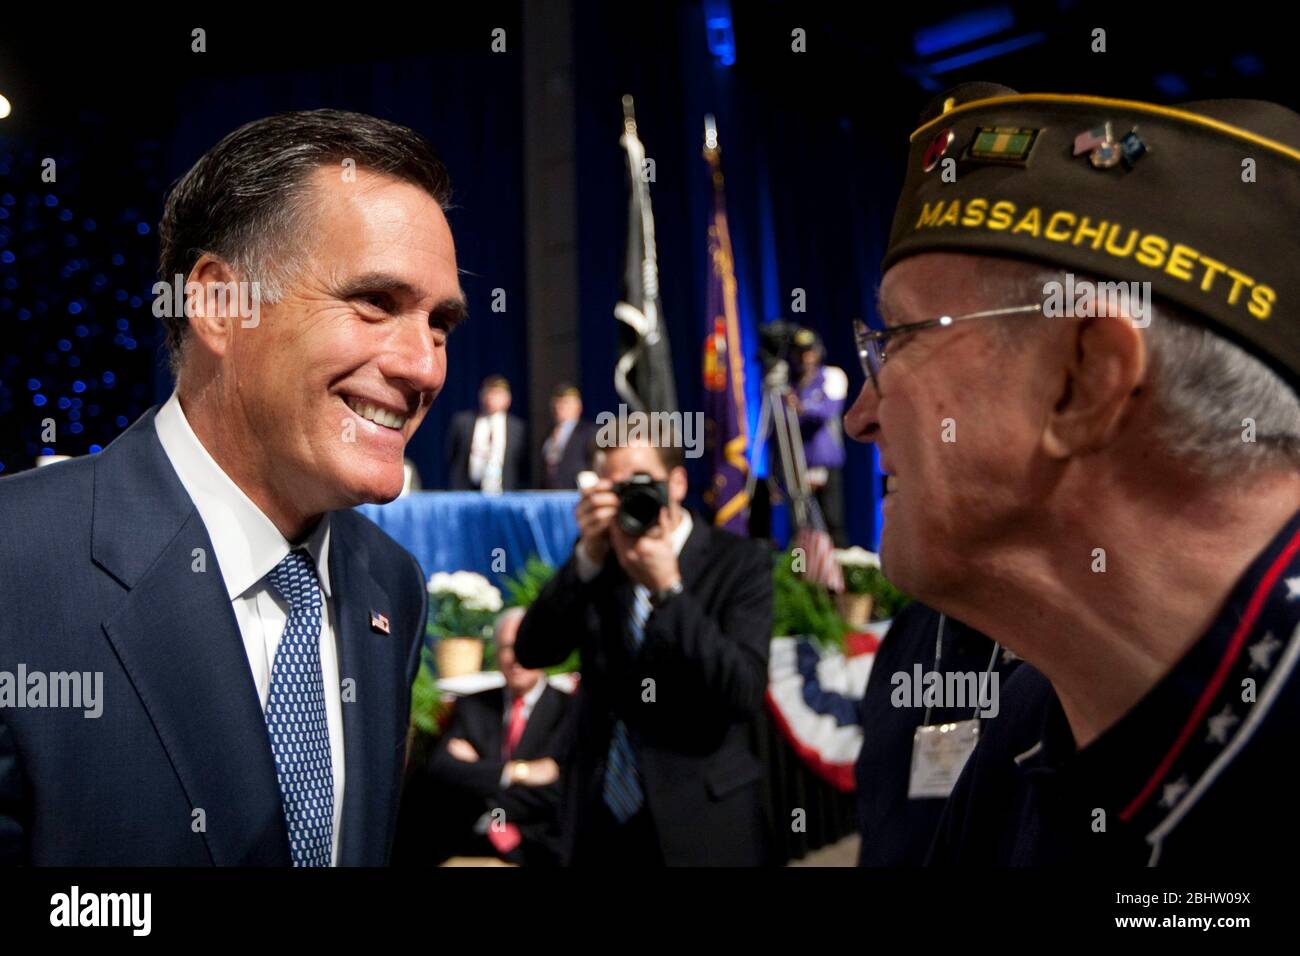 San Antonio Texas USA, San Antonio on 30 août 2011: Le candidat républicain à la présidence Mitt Romney fait une incursion dans l'état d'origine de l'adversaire Rick Perry avec une apparition à la convention annuelle des vétérans des guerres étrangères (VFW). ©Marjorie Kamys Cotera/Daemmrich Photographie Banque D'Images